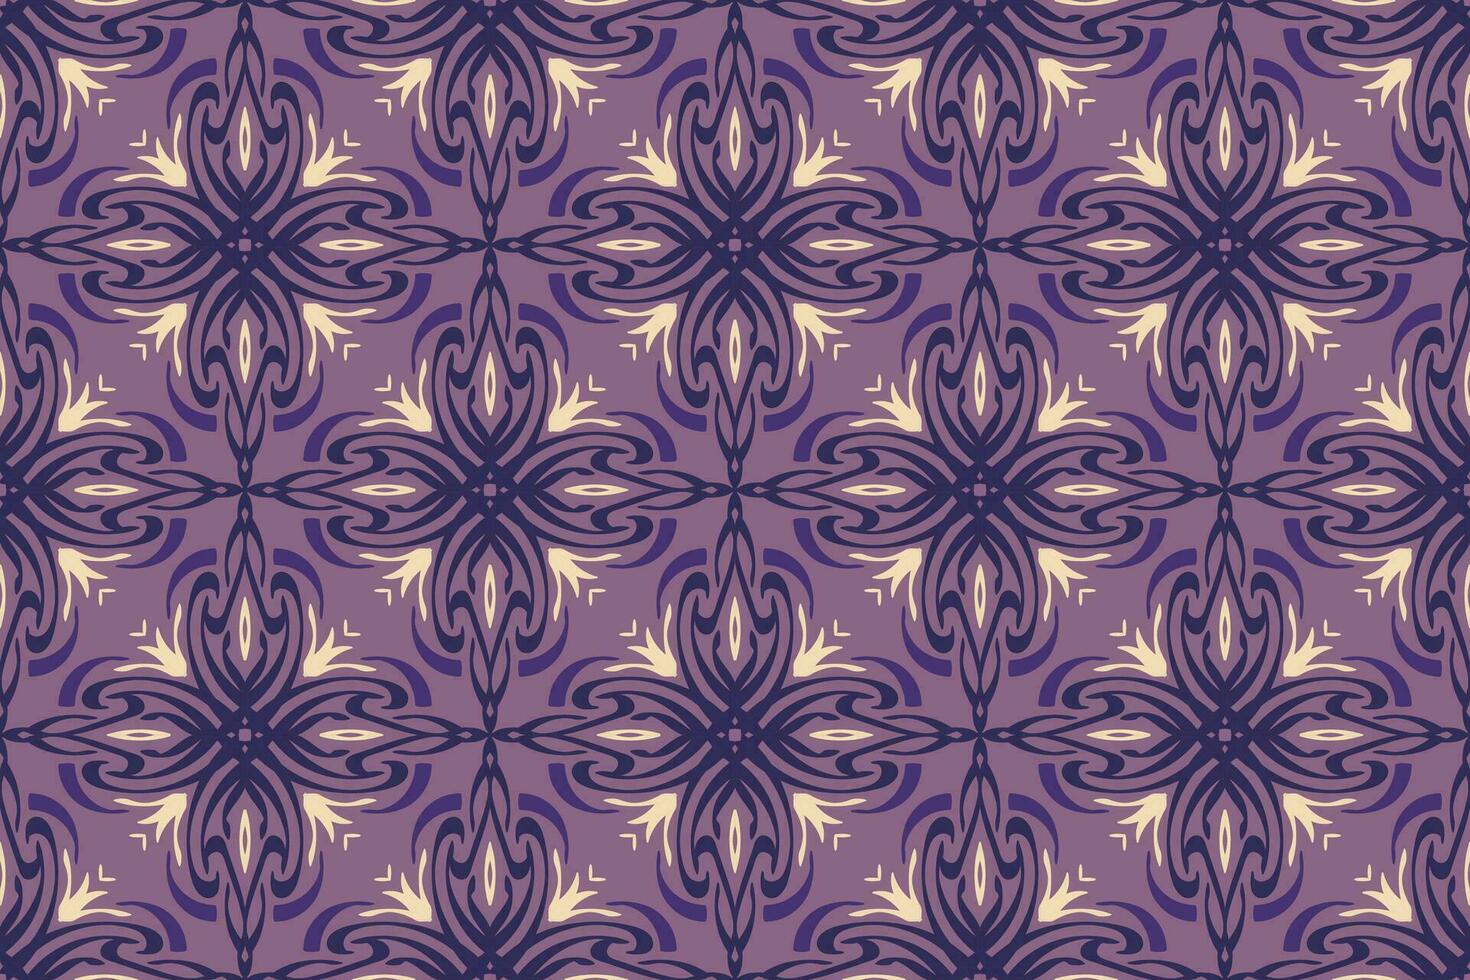 oosters naadloos patroon. patroon, achtergrond en behang voor uw ontwerp. textiel ornament. vector illustratie.